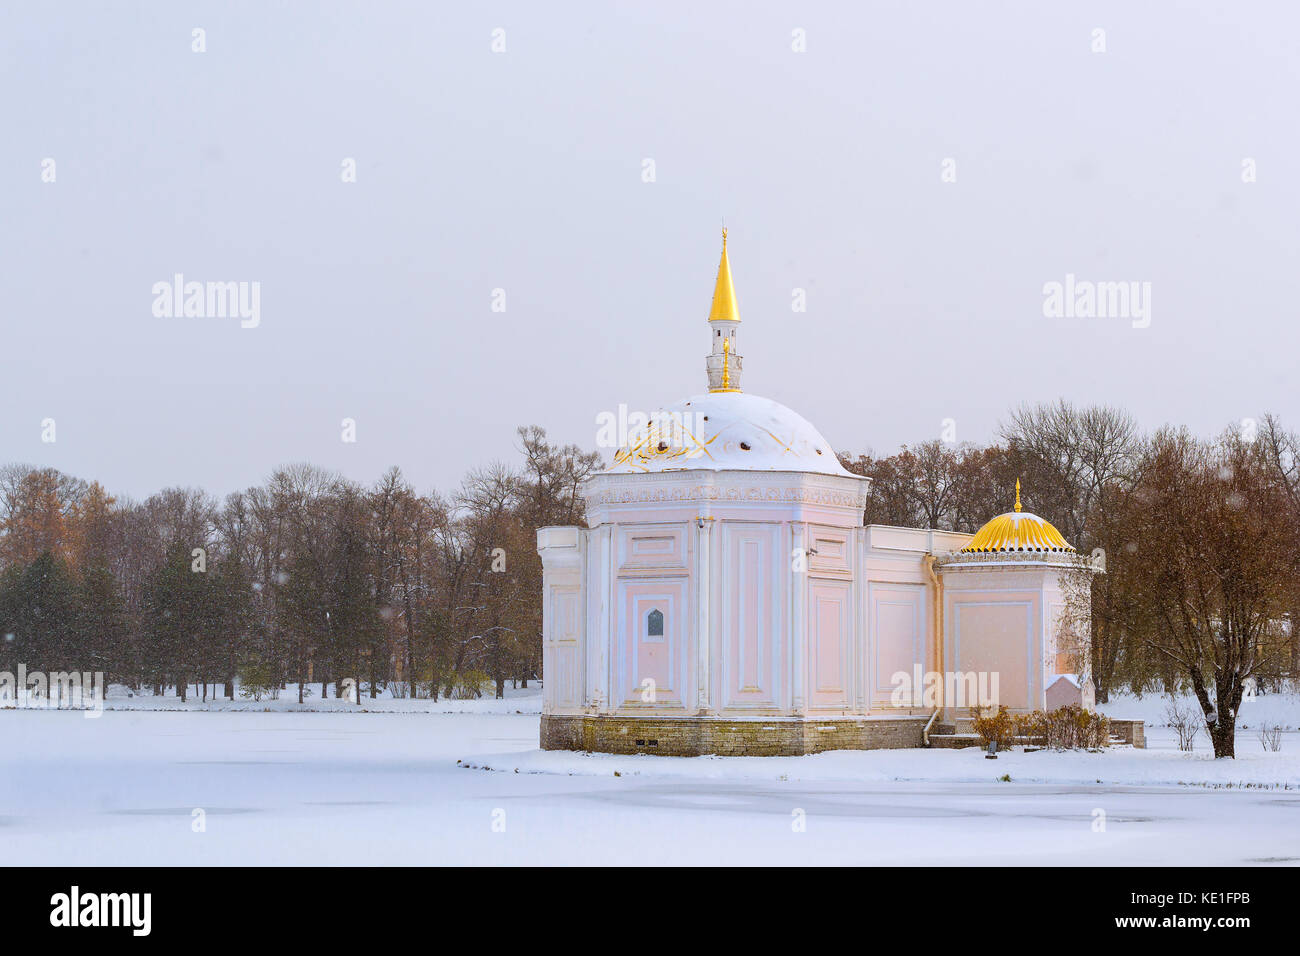 Bain turc pavilion sur étang gelé dans la neige au début du mois de novembre l'hiver au parc de Tsarskoïe Selo Catherine à Pouchkine, Saint-Petersbourg, Russie. tr Banque D'Images